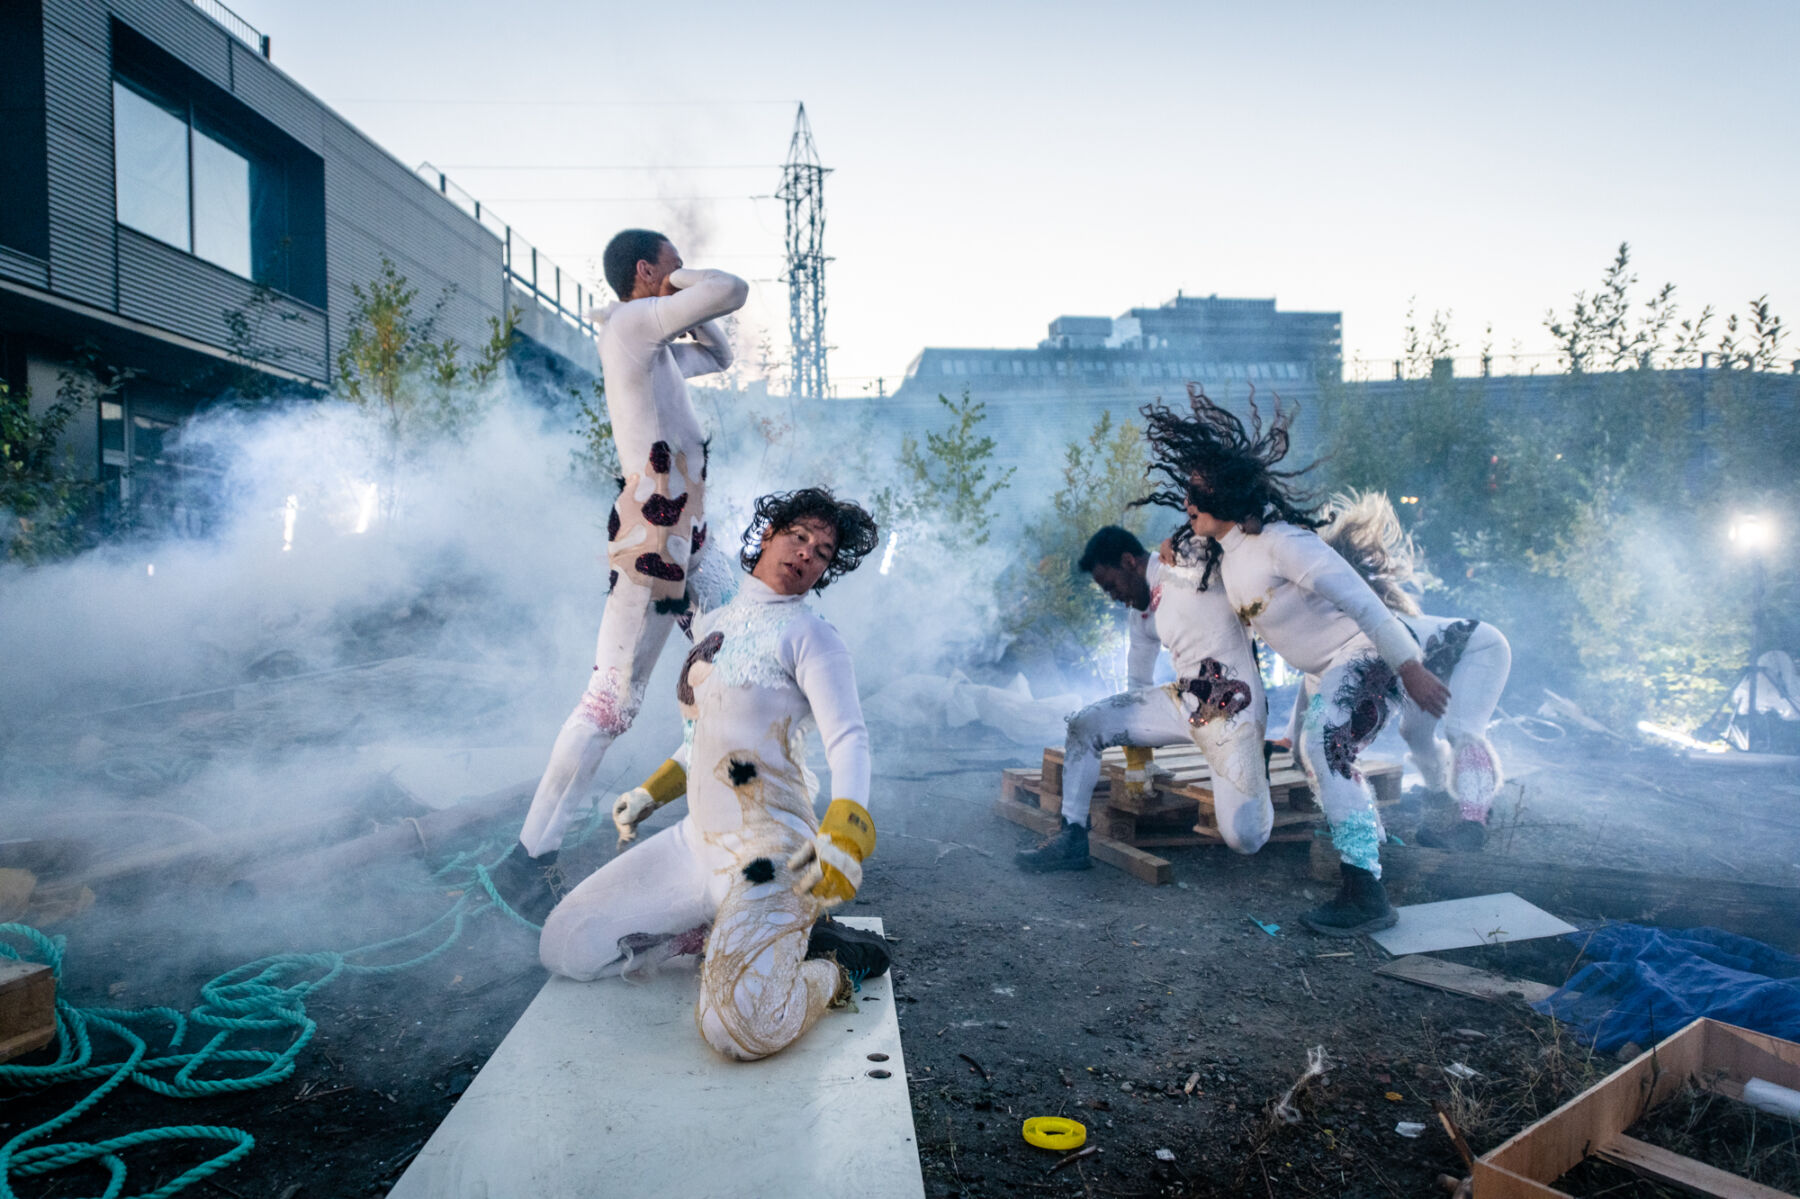 Fire mennesker danser eller beveger seg på bakken utendørs. Rundt dem er søppel, røyk og materiale. Foto.